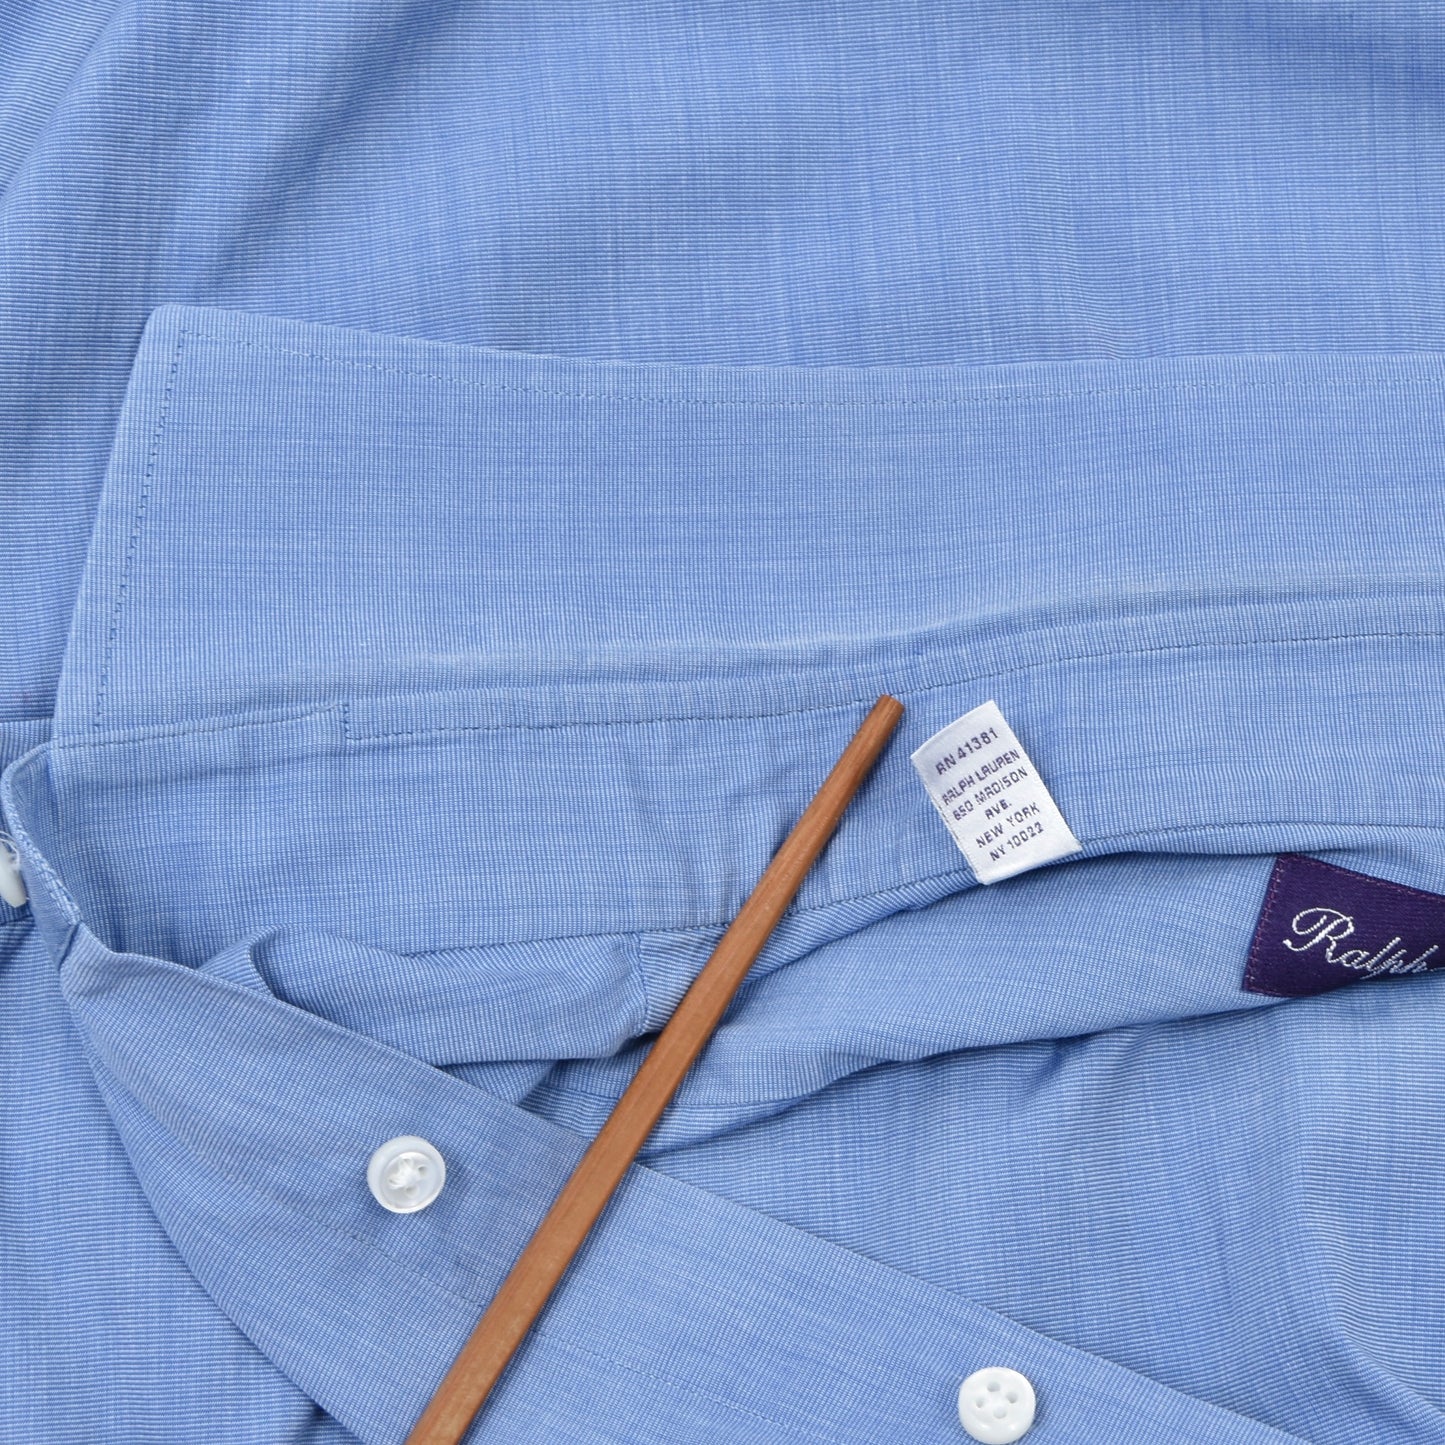 Ralph Lauren Purple Label Dress Shirt Shirt Size 16 1/2 - Blue